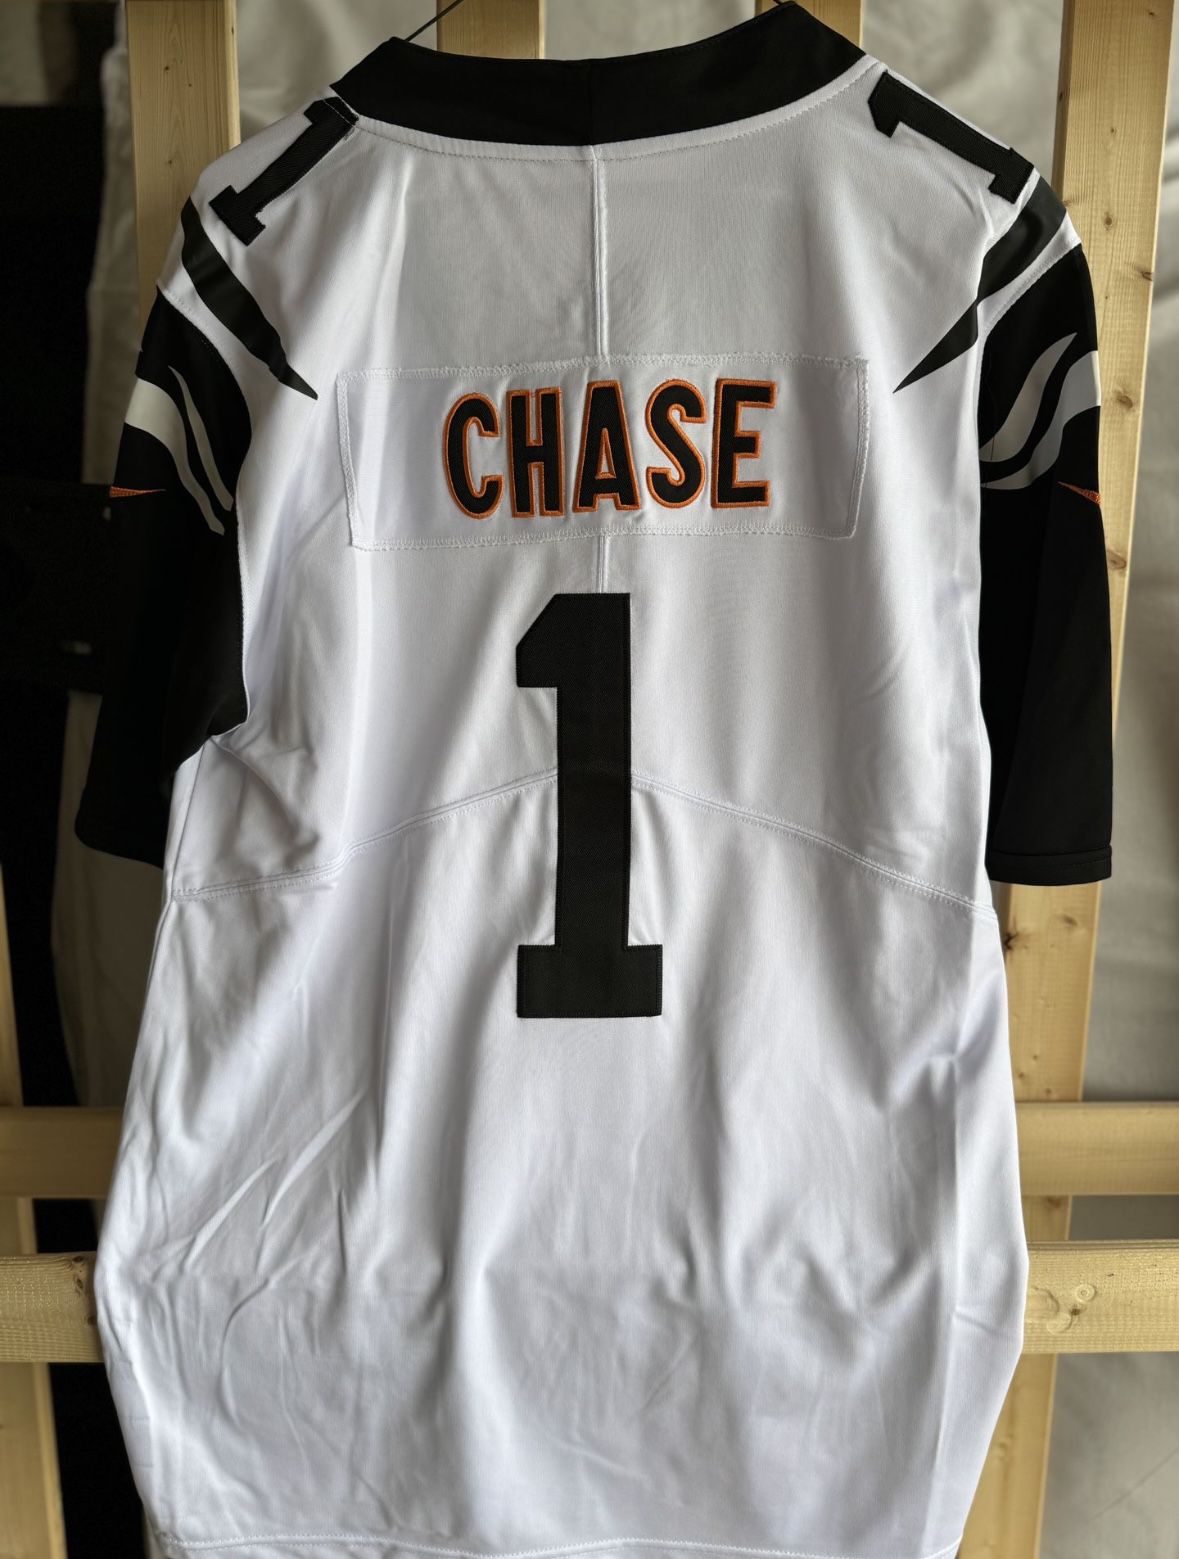 Cincinnati Bengals Chase Jersey